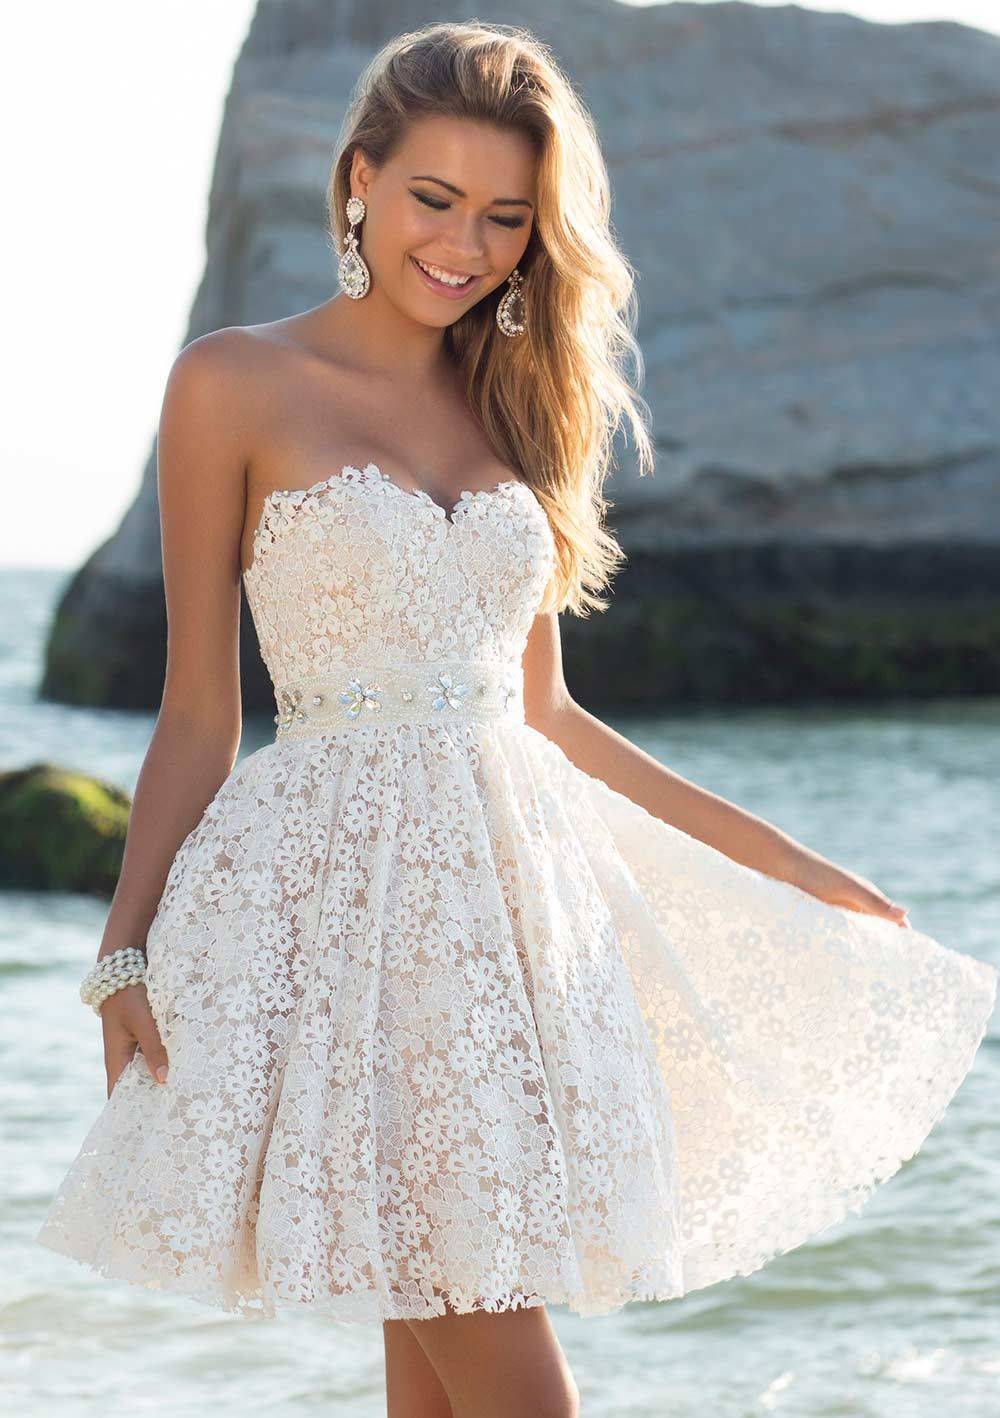 Модные свадебные платья для полных: 100 лучших моделей для идеального торжества